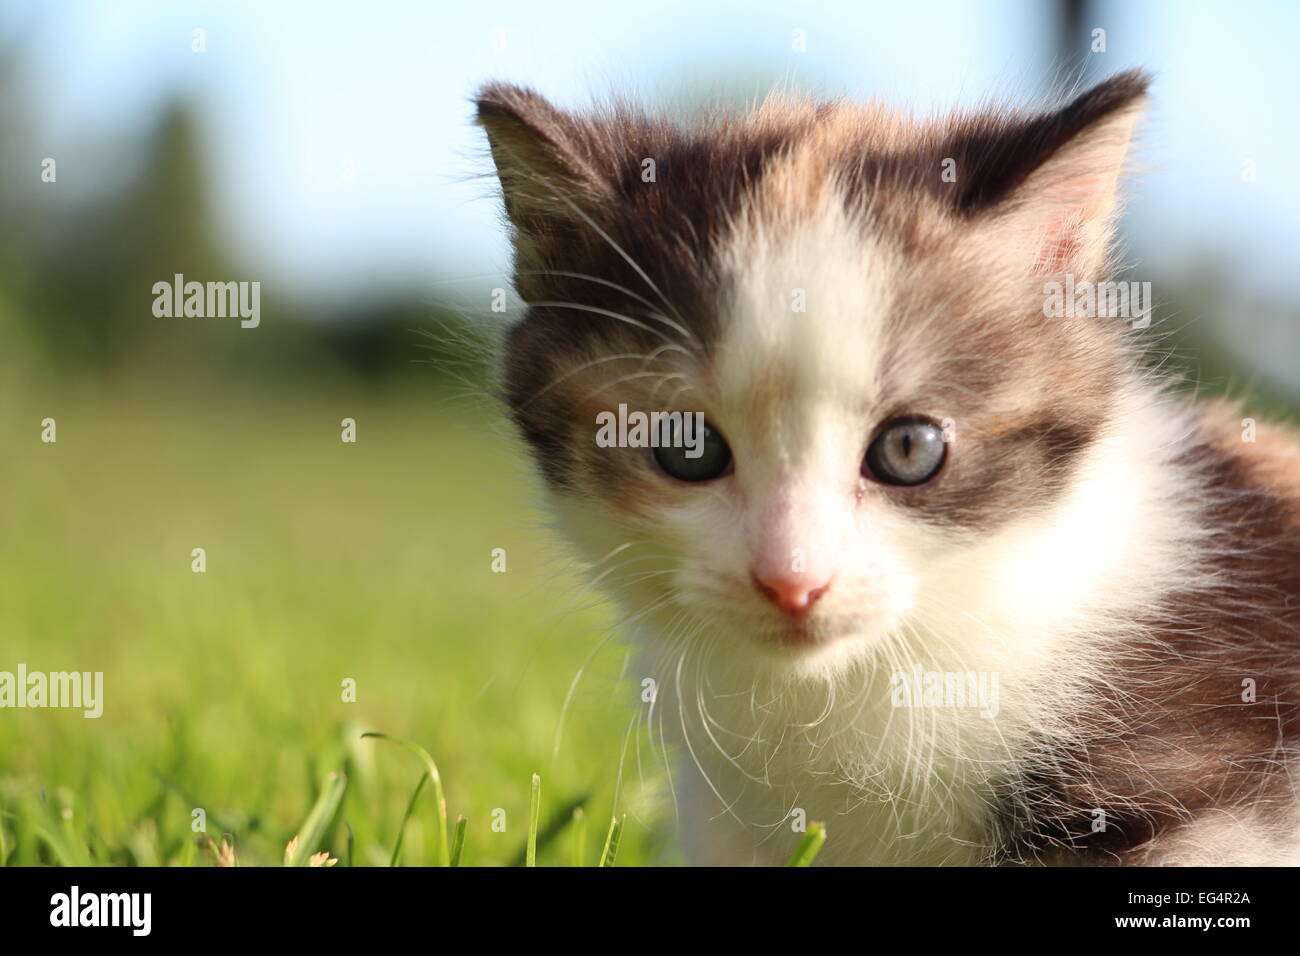 Cute kitten exploring the grass an hot summer day in Sweden Stock Photo